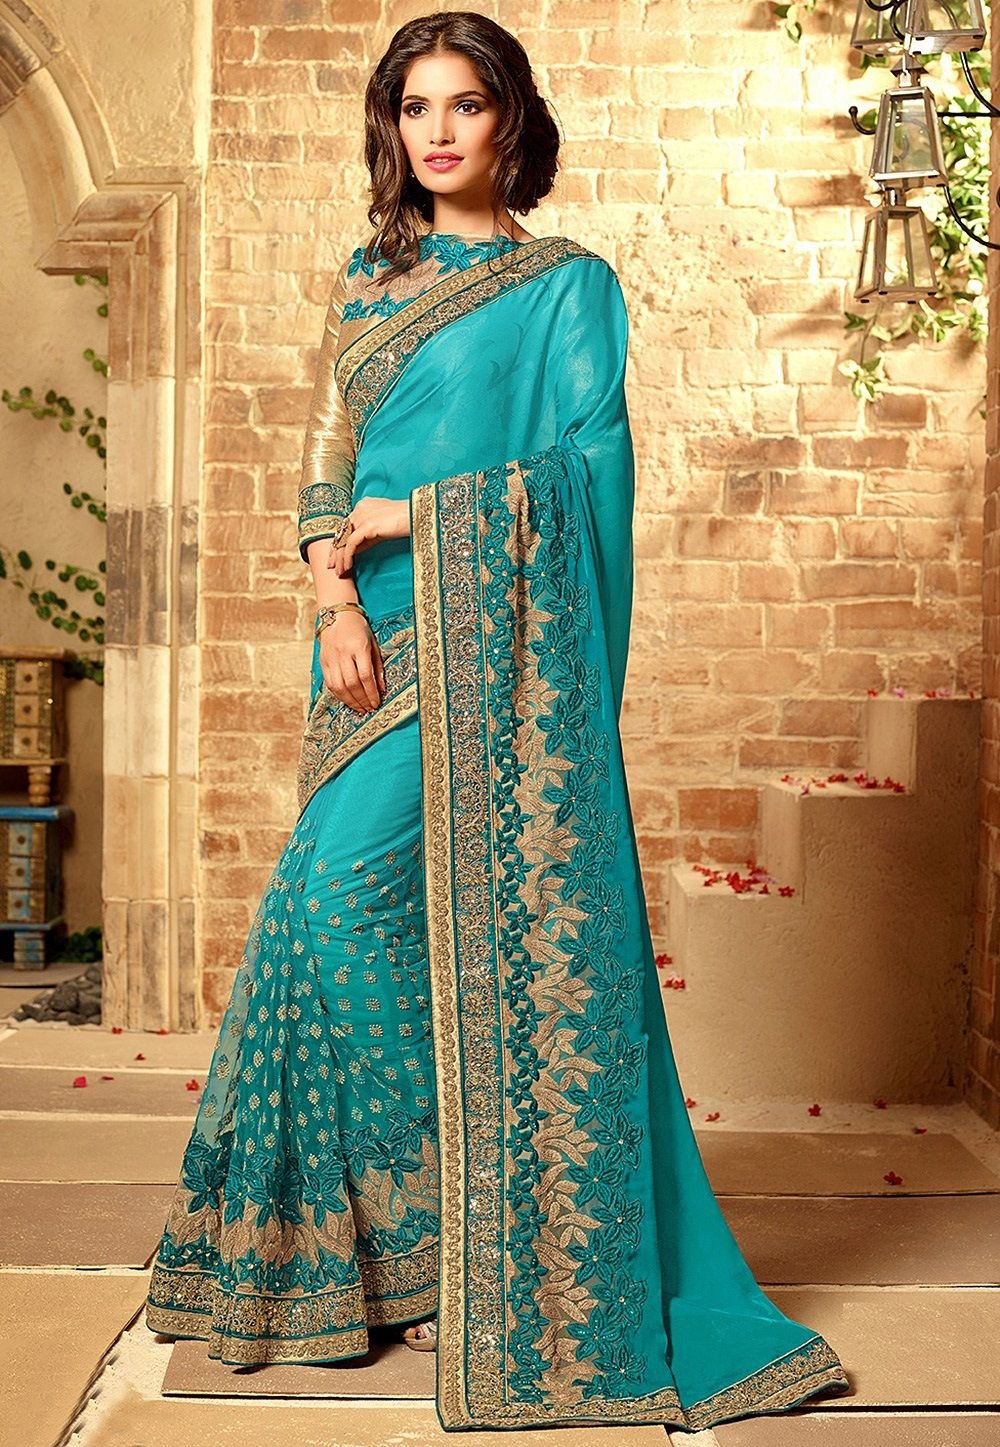 Картинка сари. Сари индийская одежда. Сари (женская одежда в Индии). Голубое Сари Индия. Сари платье Индии.